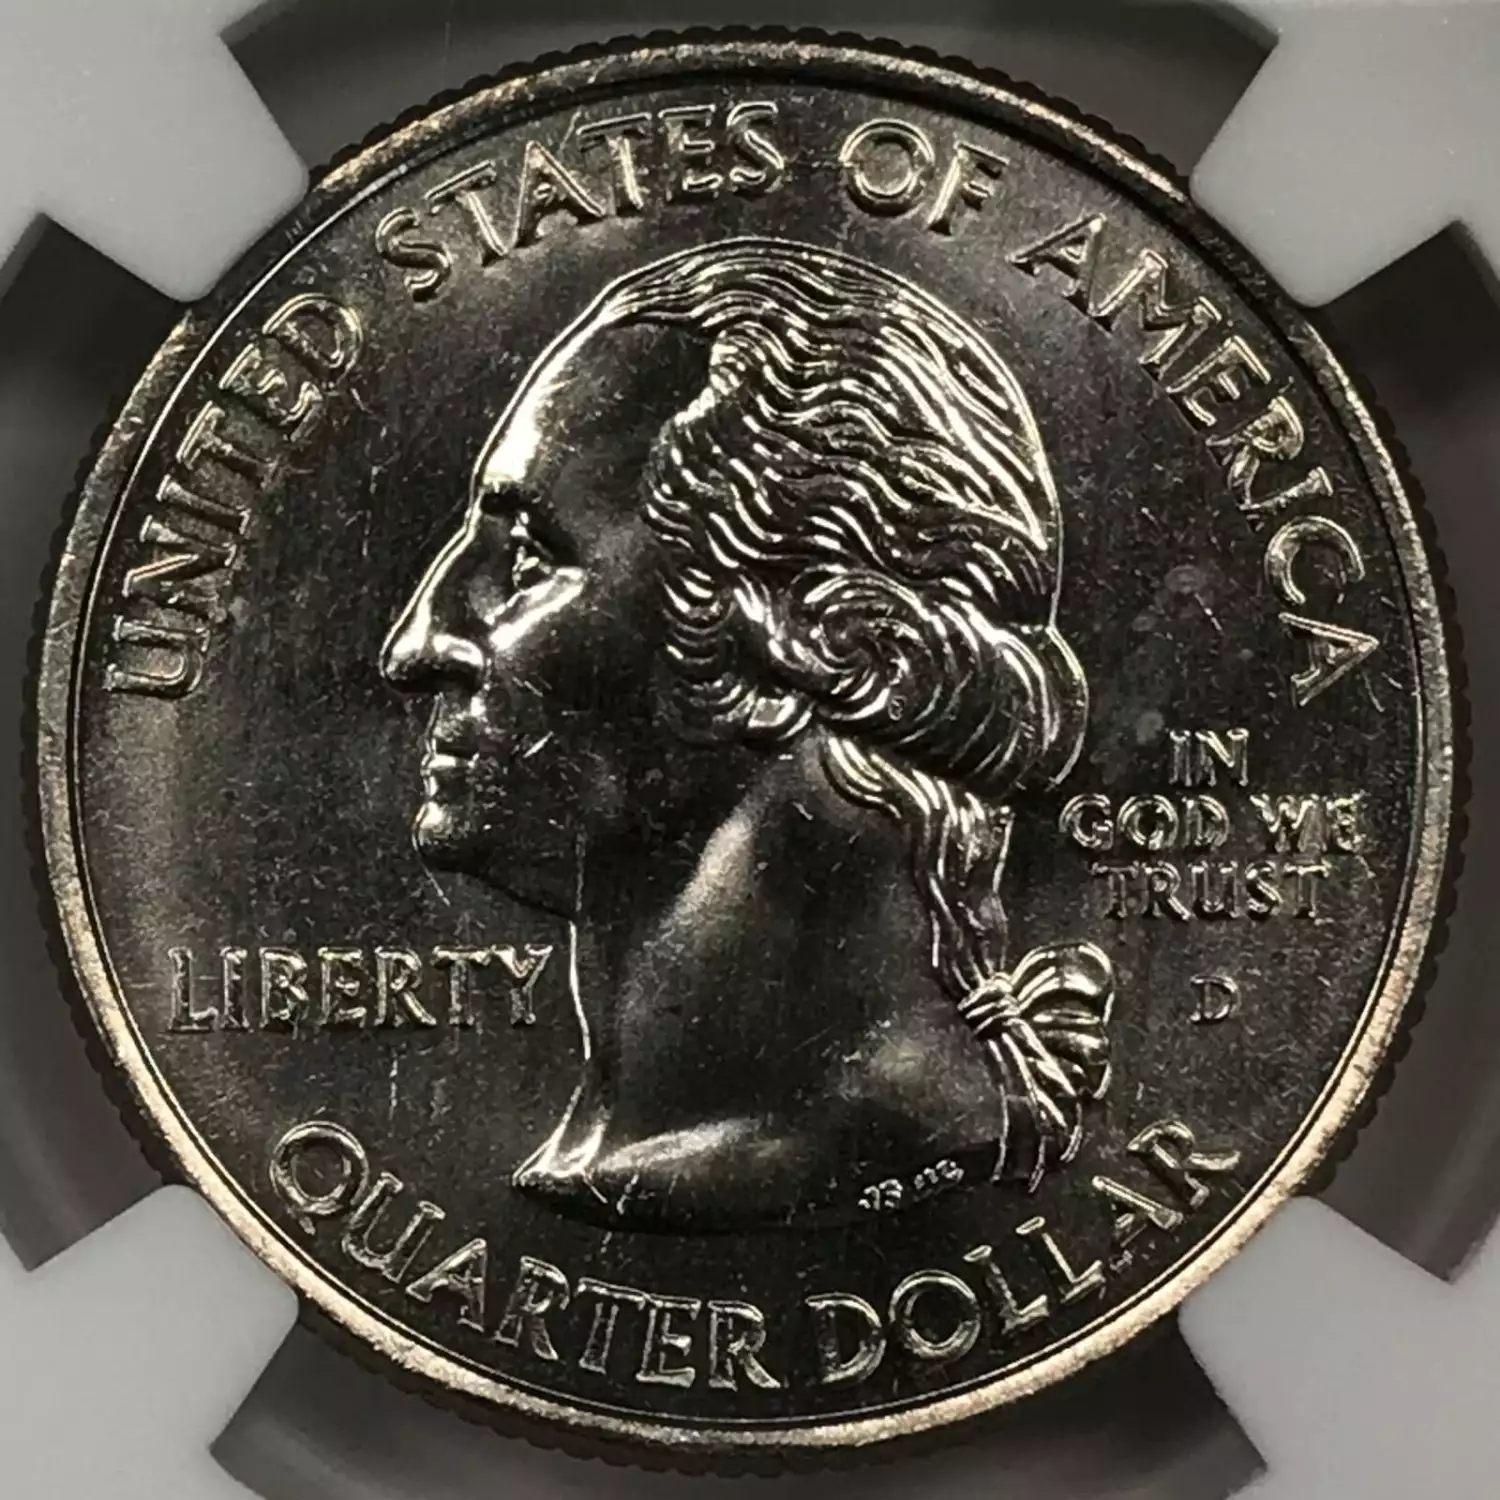 Quarter Dollar - State Series (1999-2008)